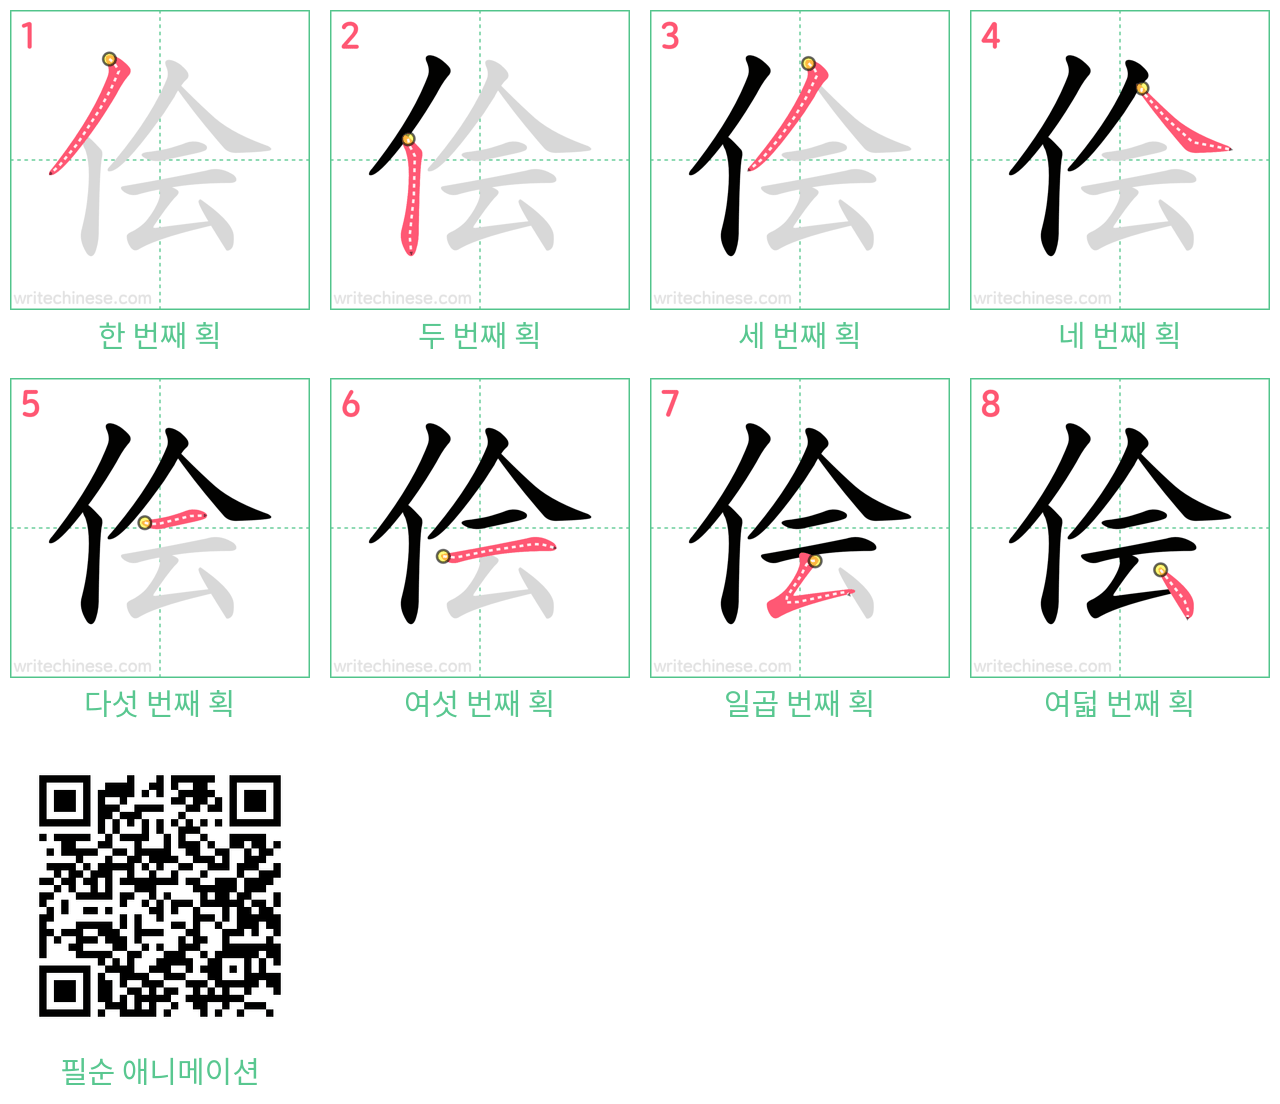 侩 step-by-step stroke order diagrams